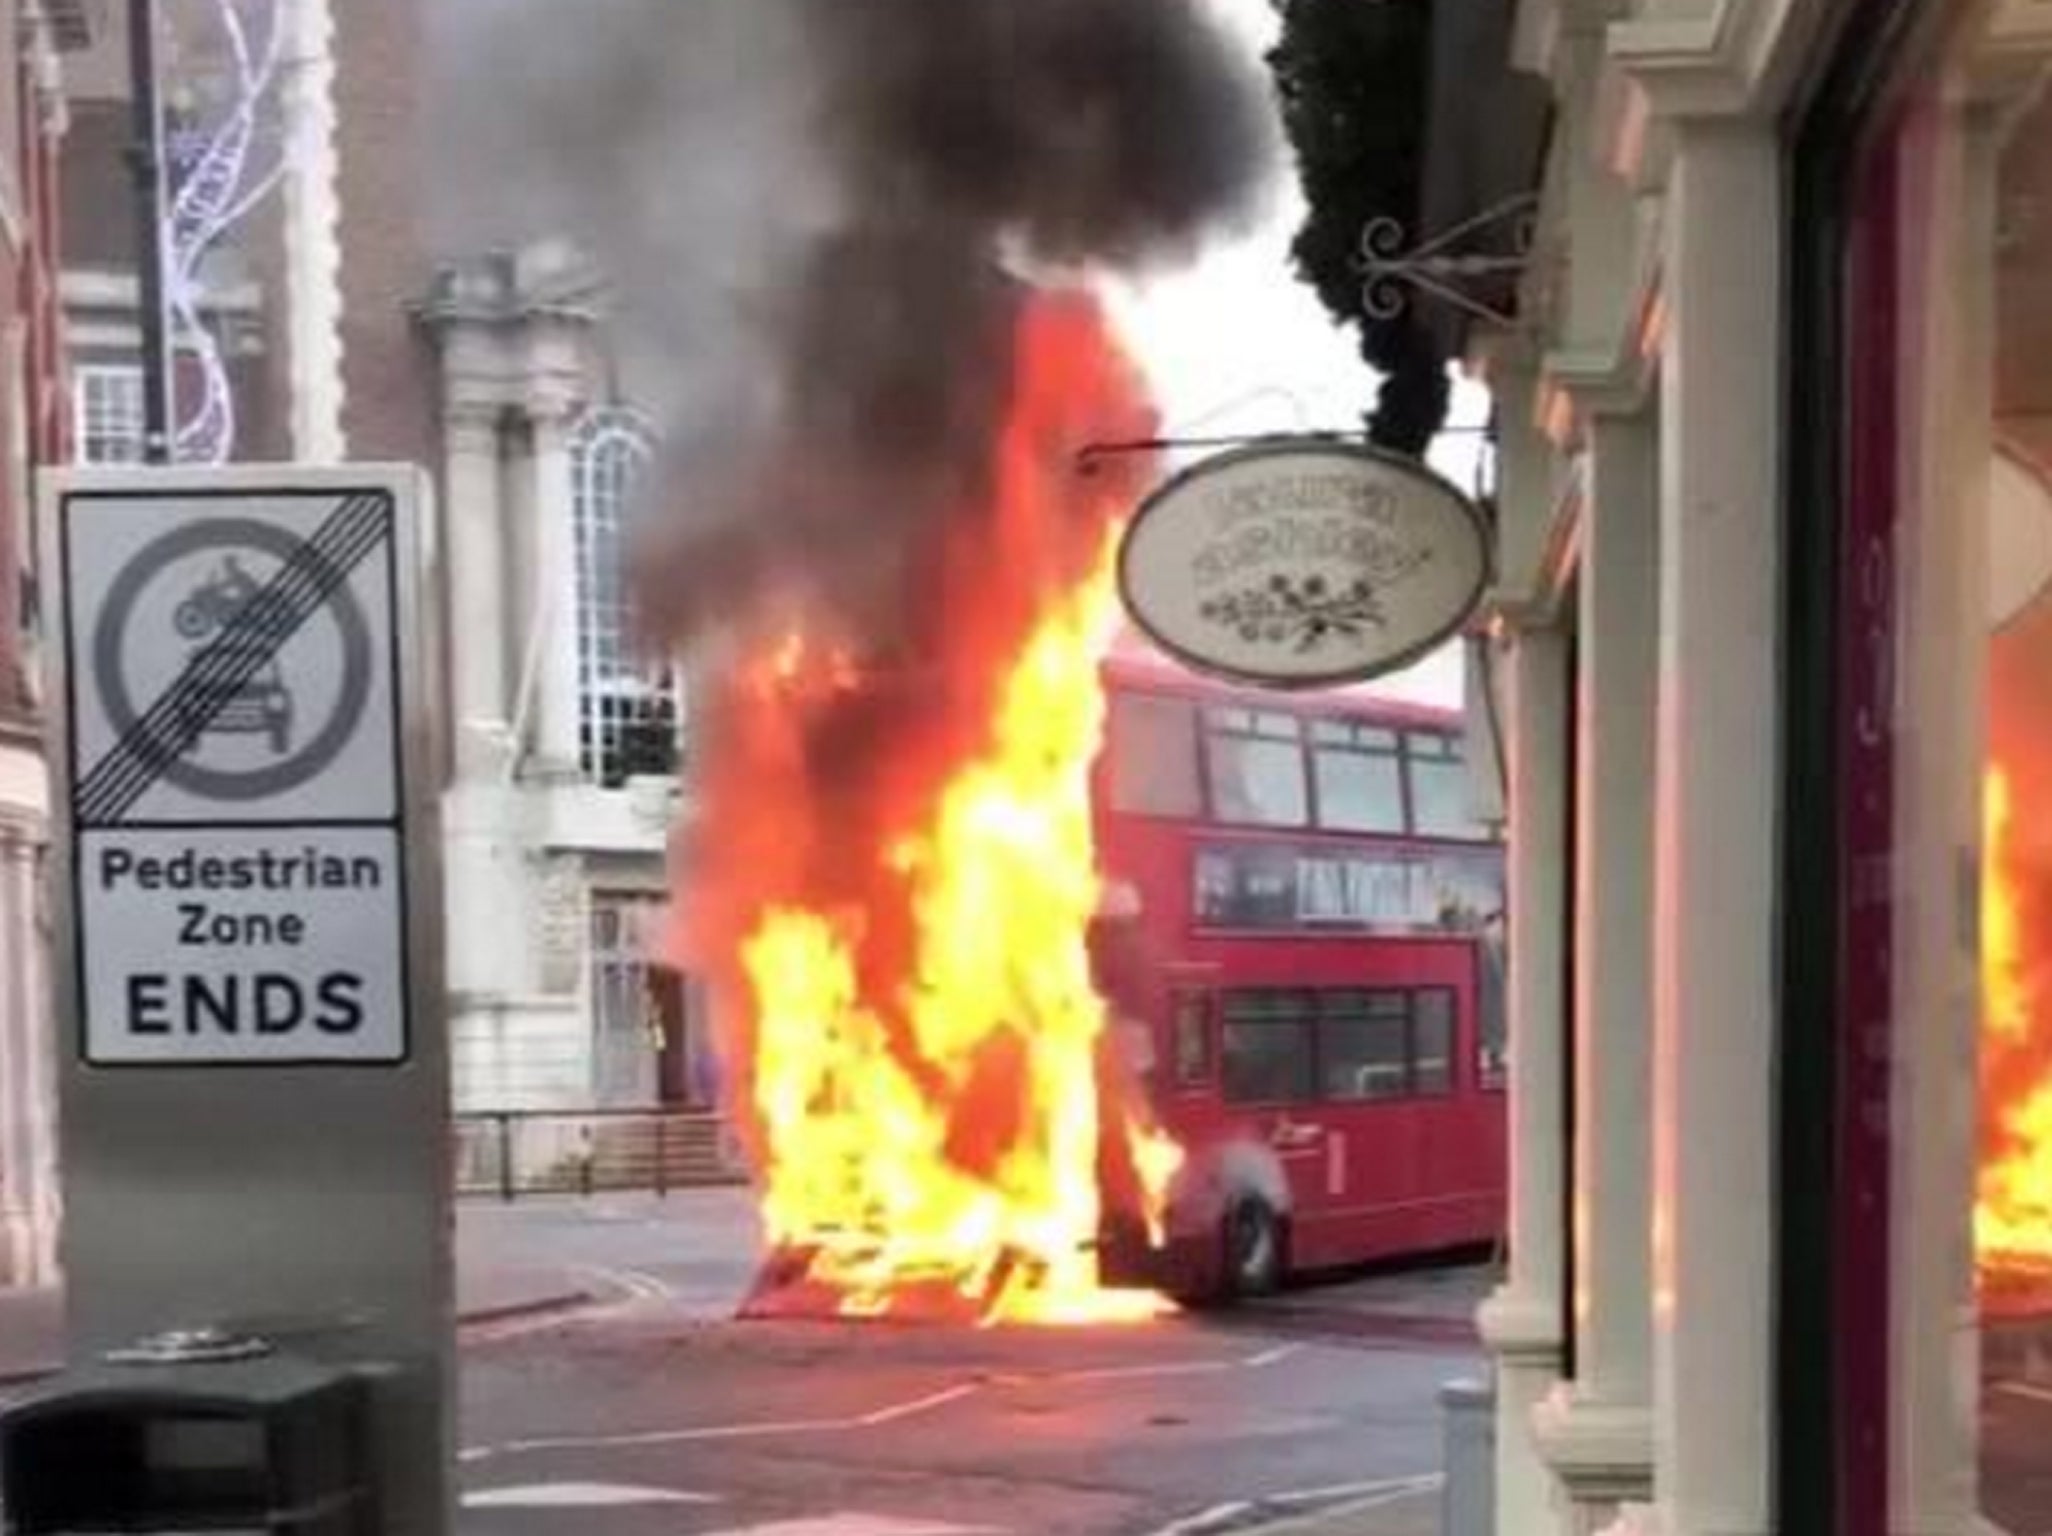 A London bus in flames in Kingston